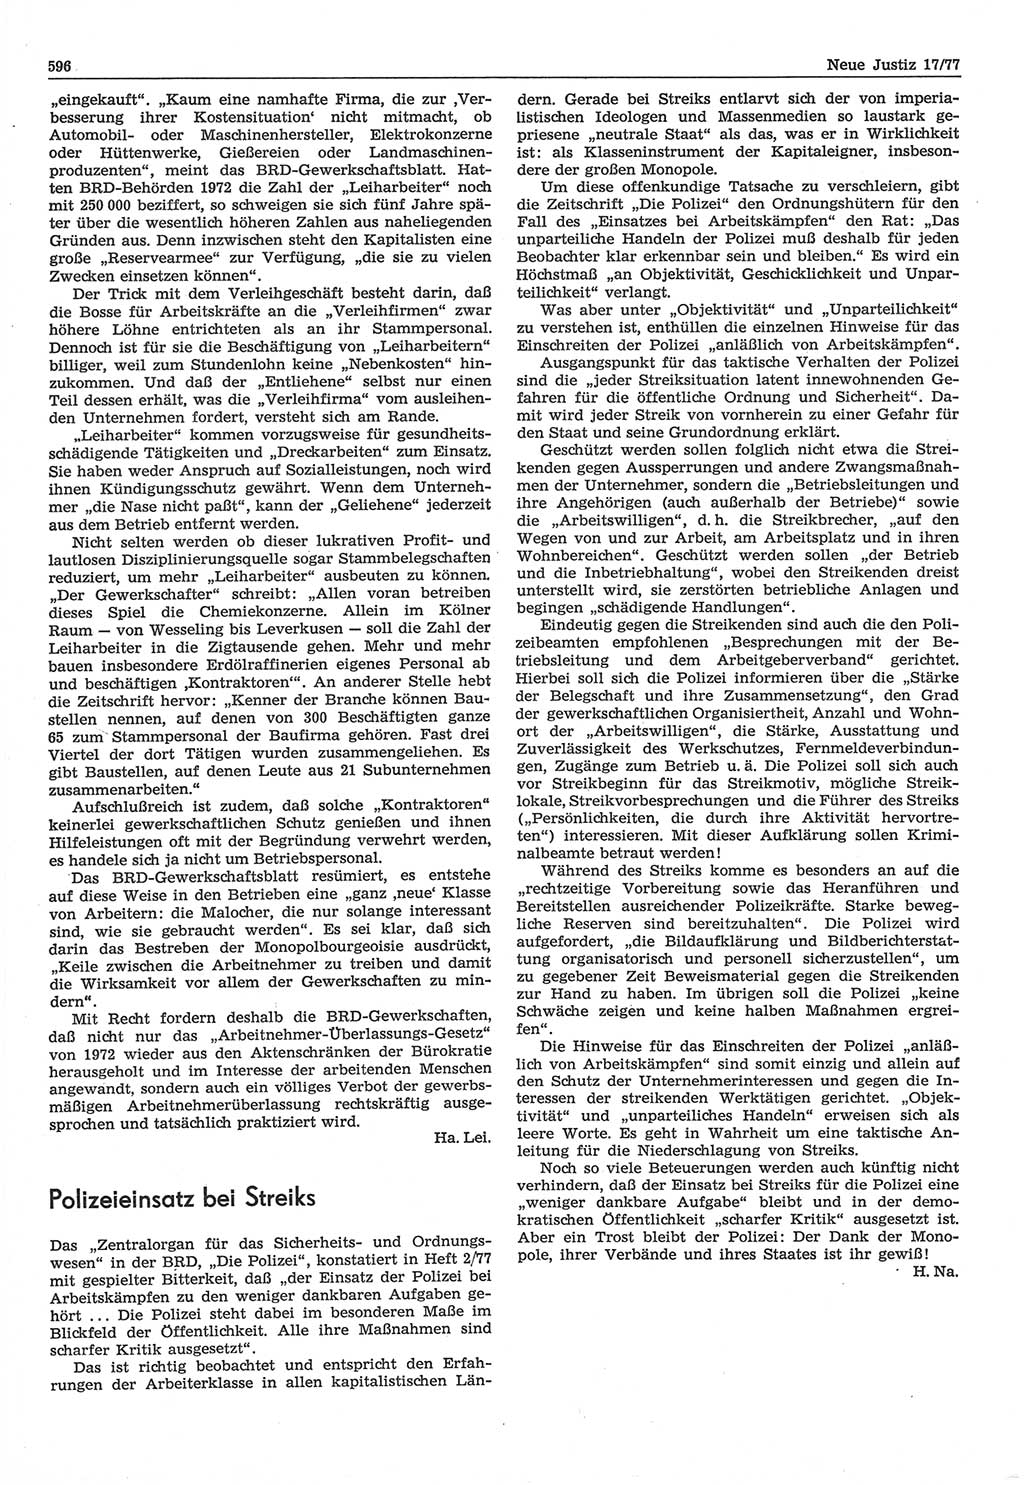 Neue Justiz (NJ), Zeitschrift für Recht und Rechtswissenschaft-Zeitschrift, sozialistisches Recht und Gesetzlichkeit, 31. Jahrgang 1977, Seite 596 (NJ DDR 1977, S. 596)